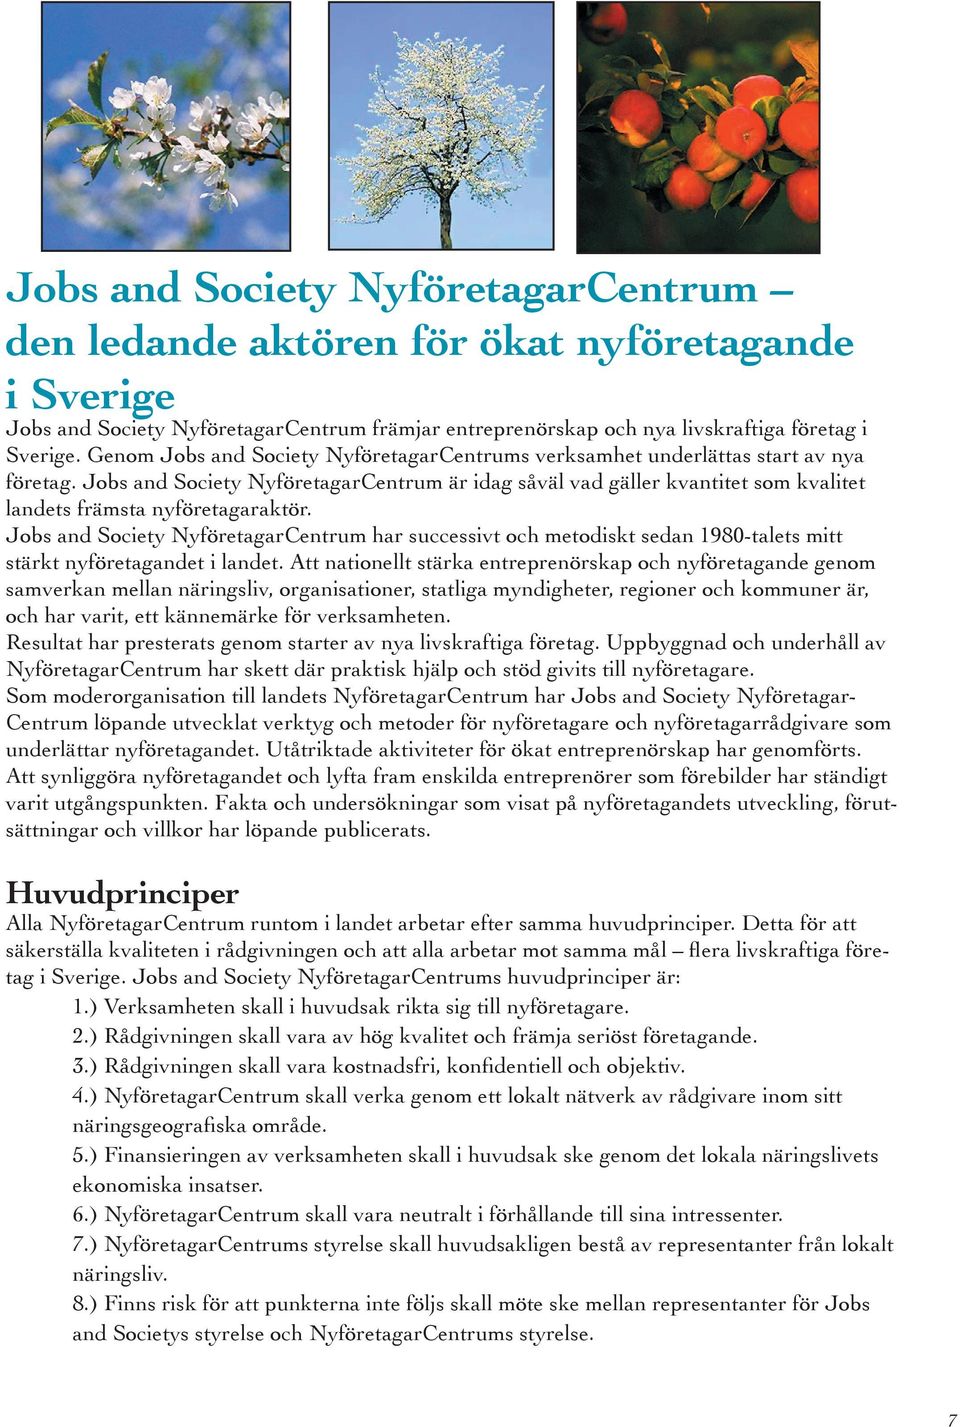 Jobs and Society NyföretagarCentrum är idag såväl vad gäller kvantitet som kvalitet landets främsta nyföretagaraktör.